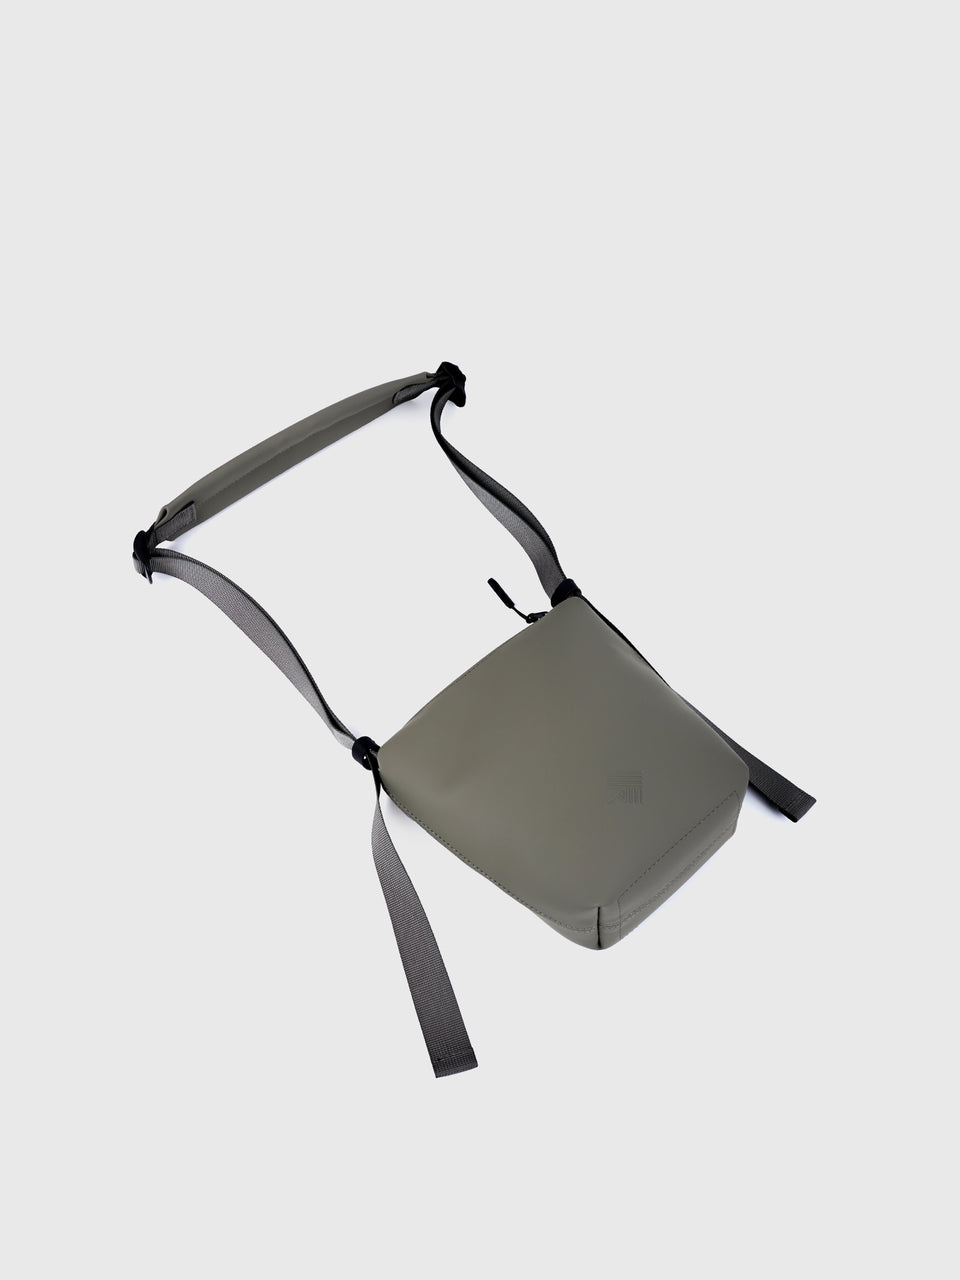 Single Phone Bag - Vert Fer